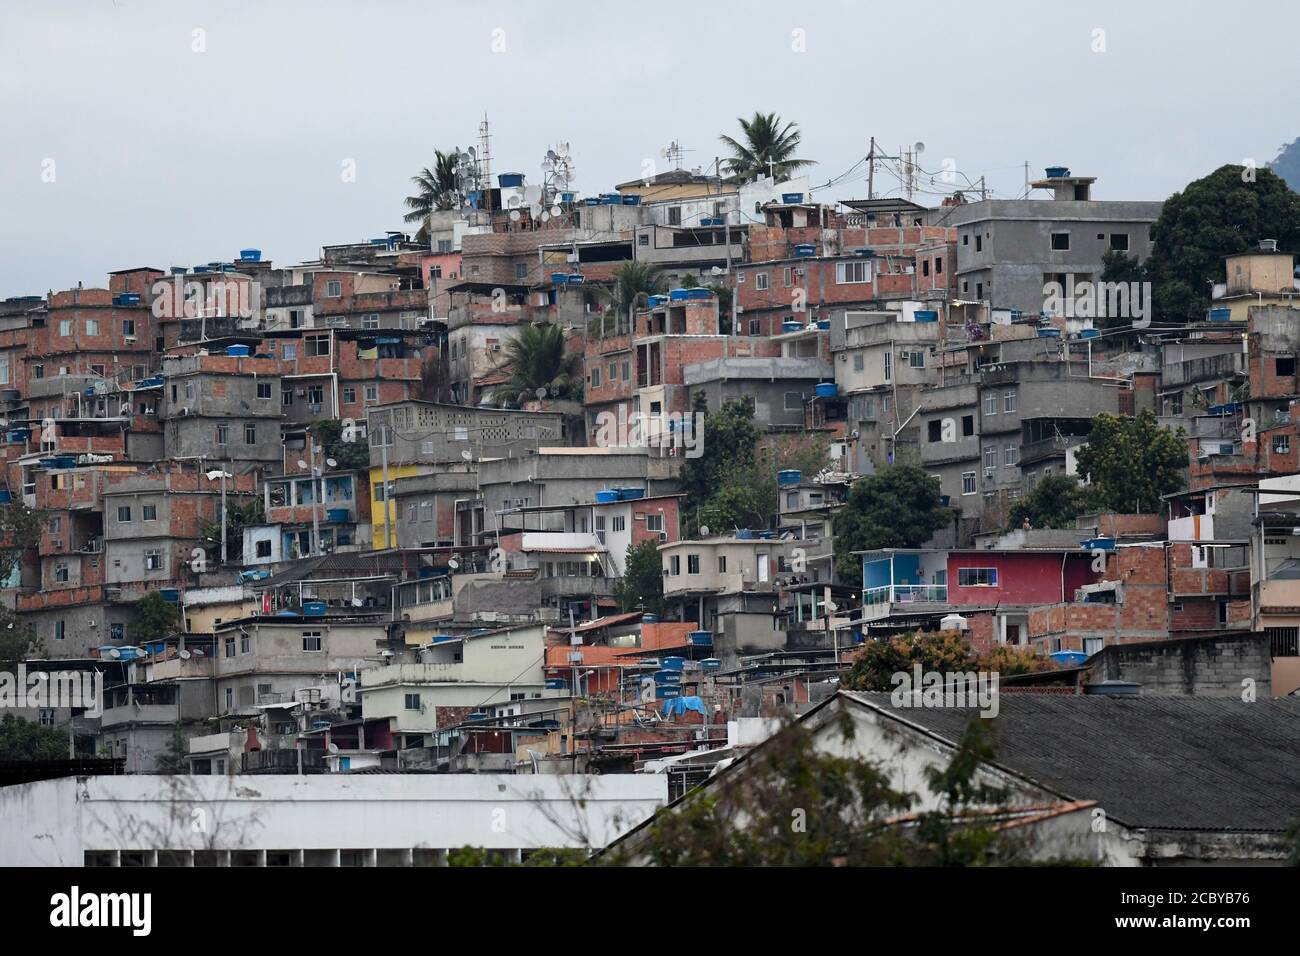 Rio, Brasile - 16 agosto 2020: Residenze nella povera comunità della città in un giorno nuvoloso Foto Stock